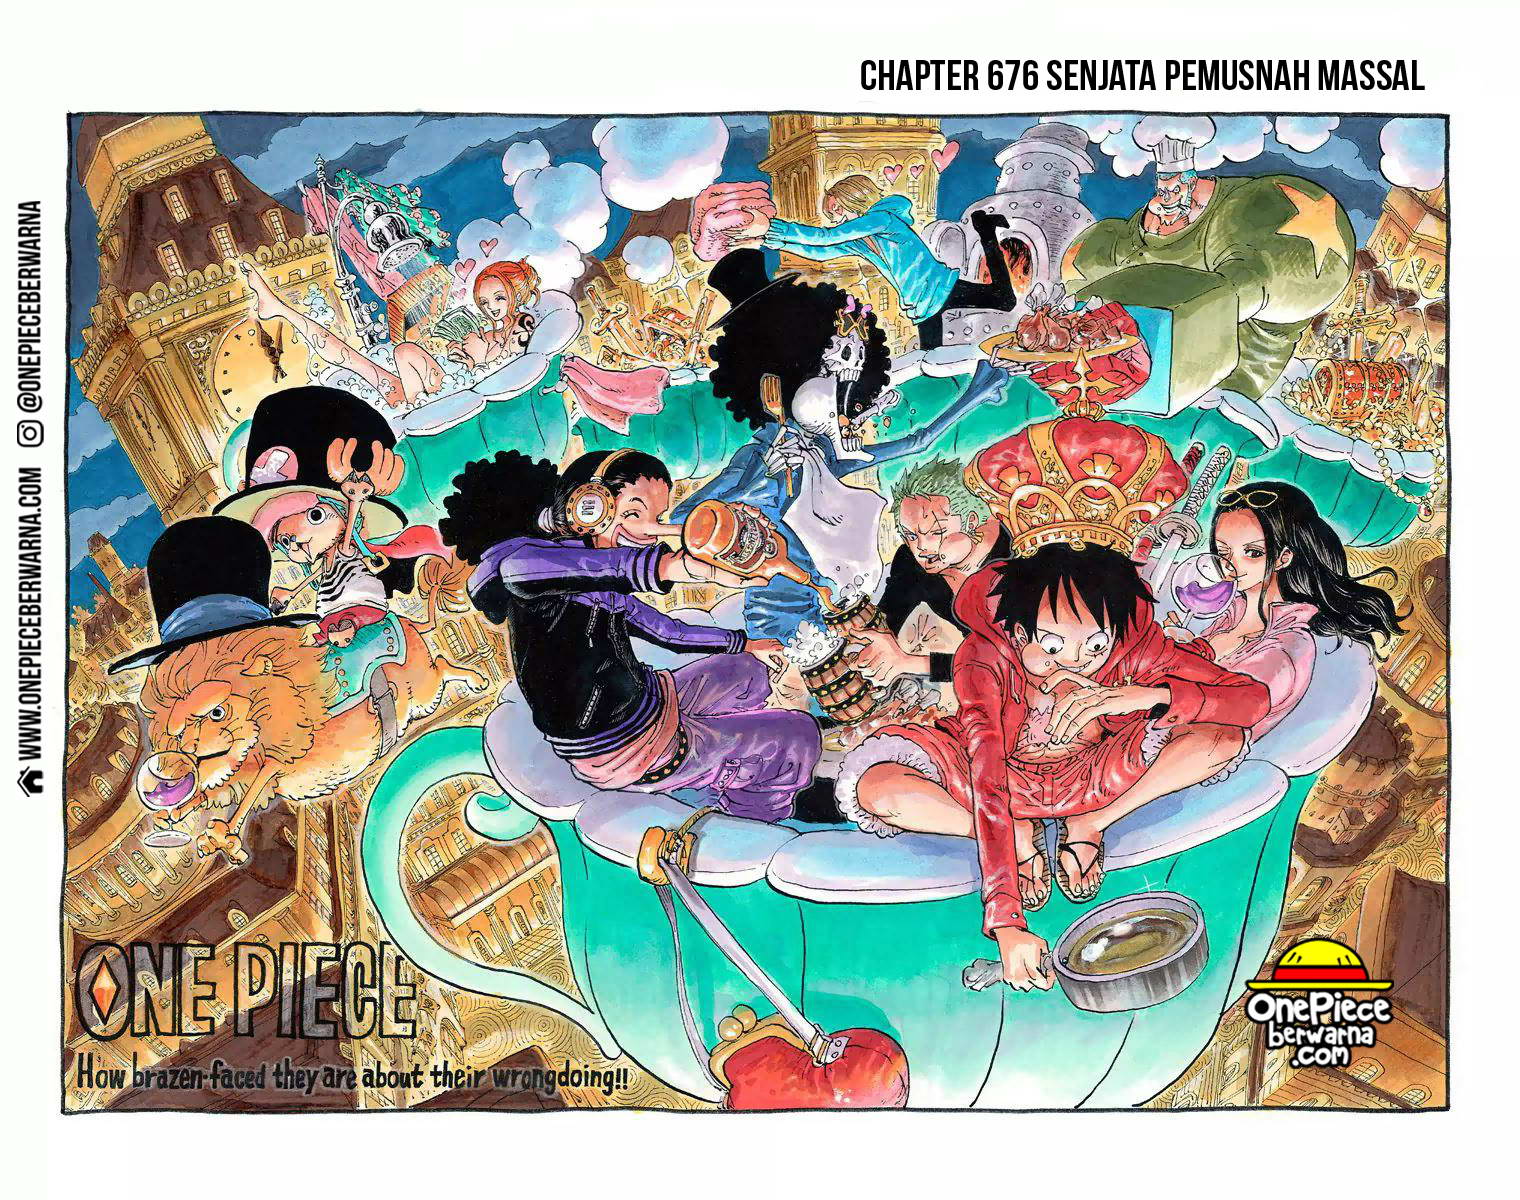 One Piece Berwarna Chapter 676